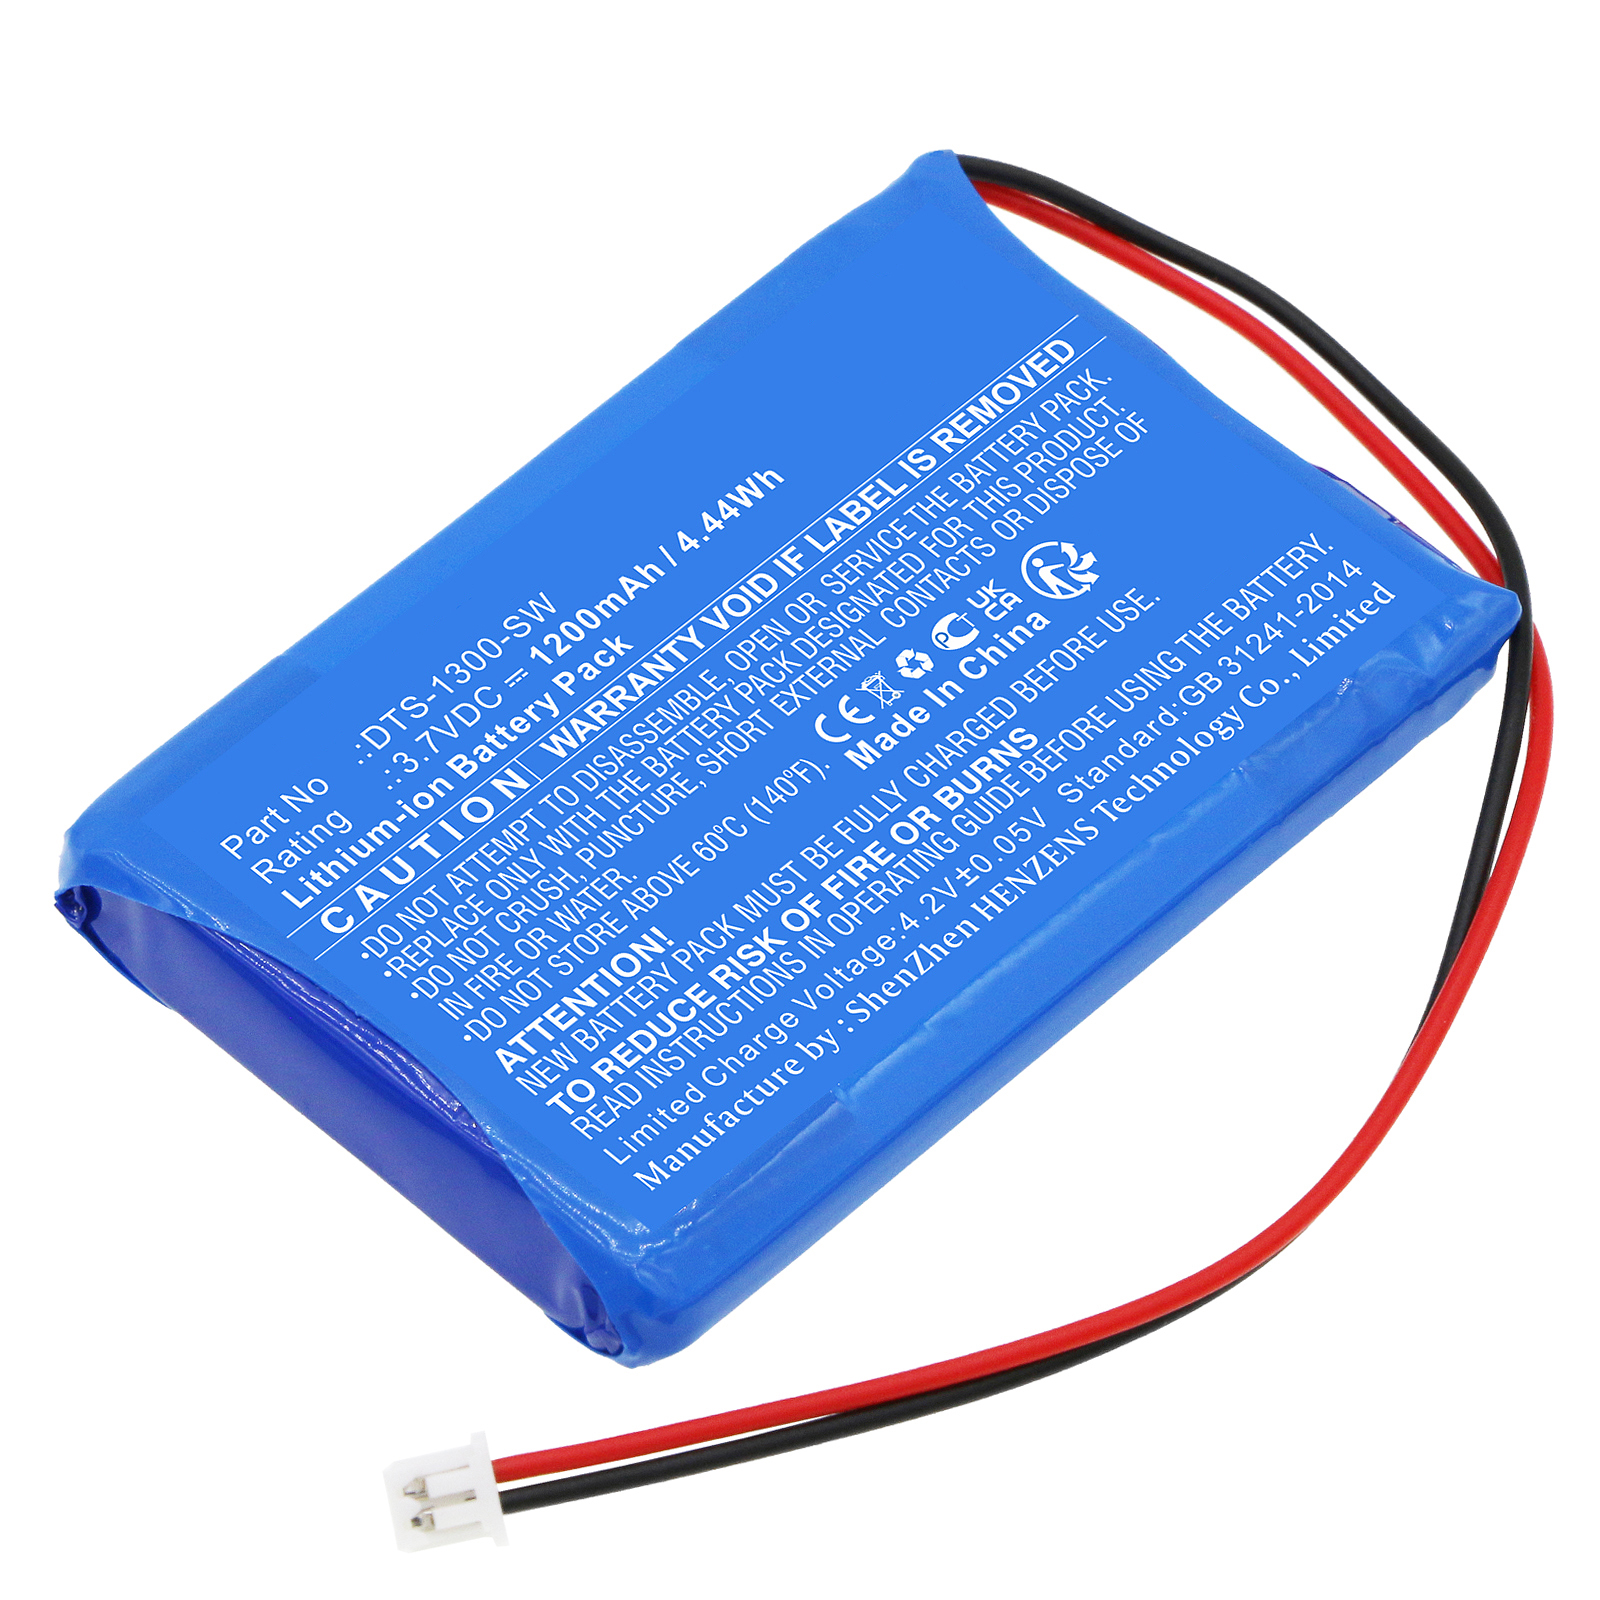 Batteries for SumUpCredit Card Reader